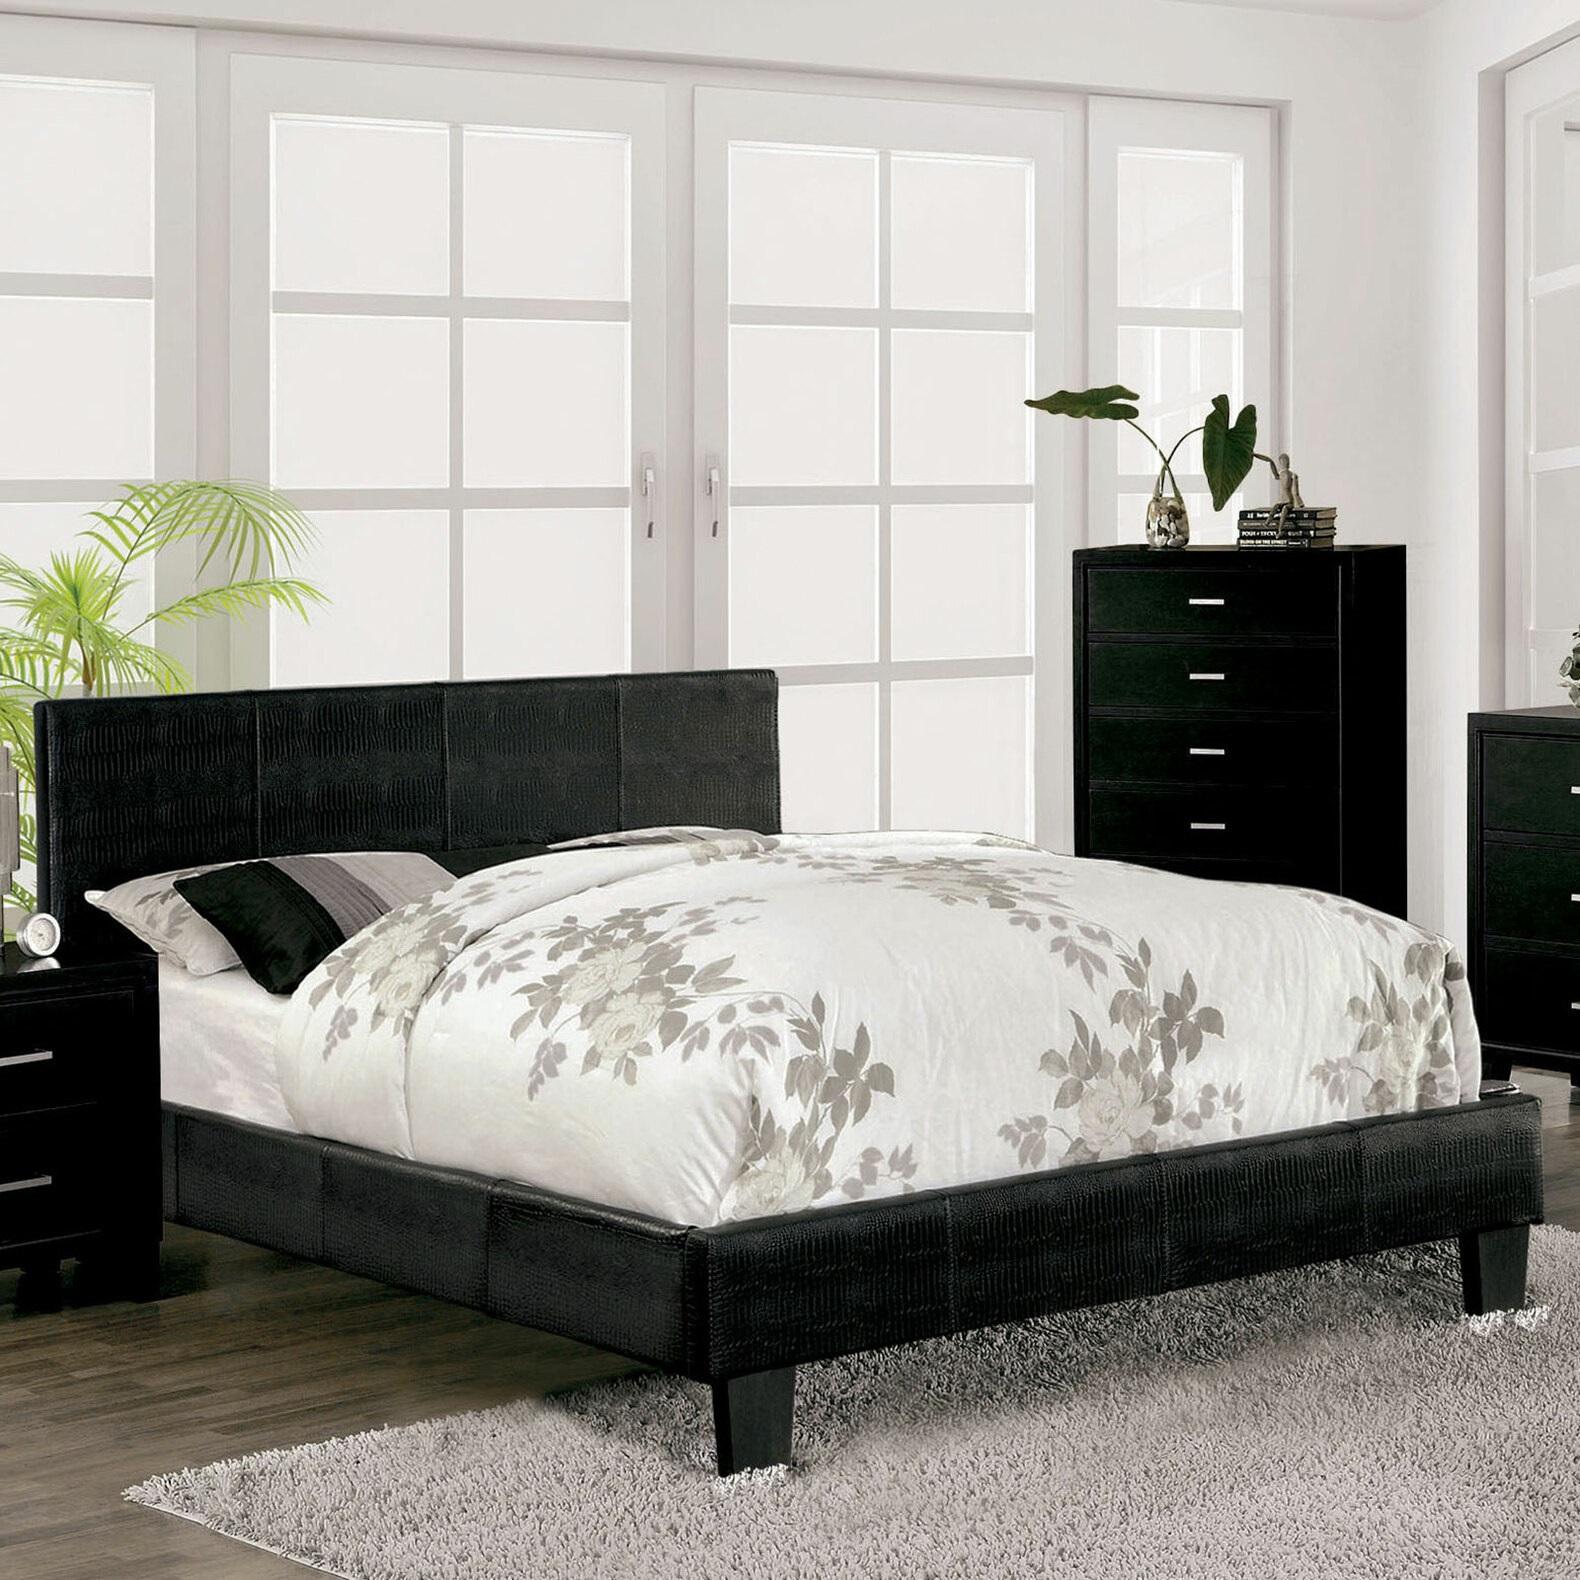 

    
Contemporary Black Solid Wood CAL Bedroom Set 3pcs Furniture of America CM7793BK-CK Wallen
